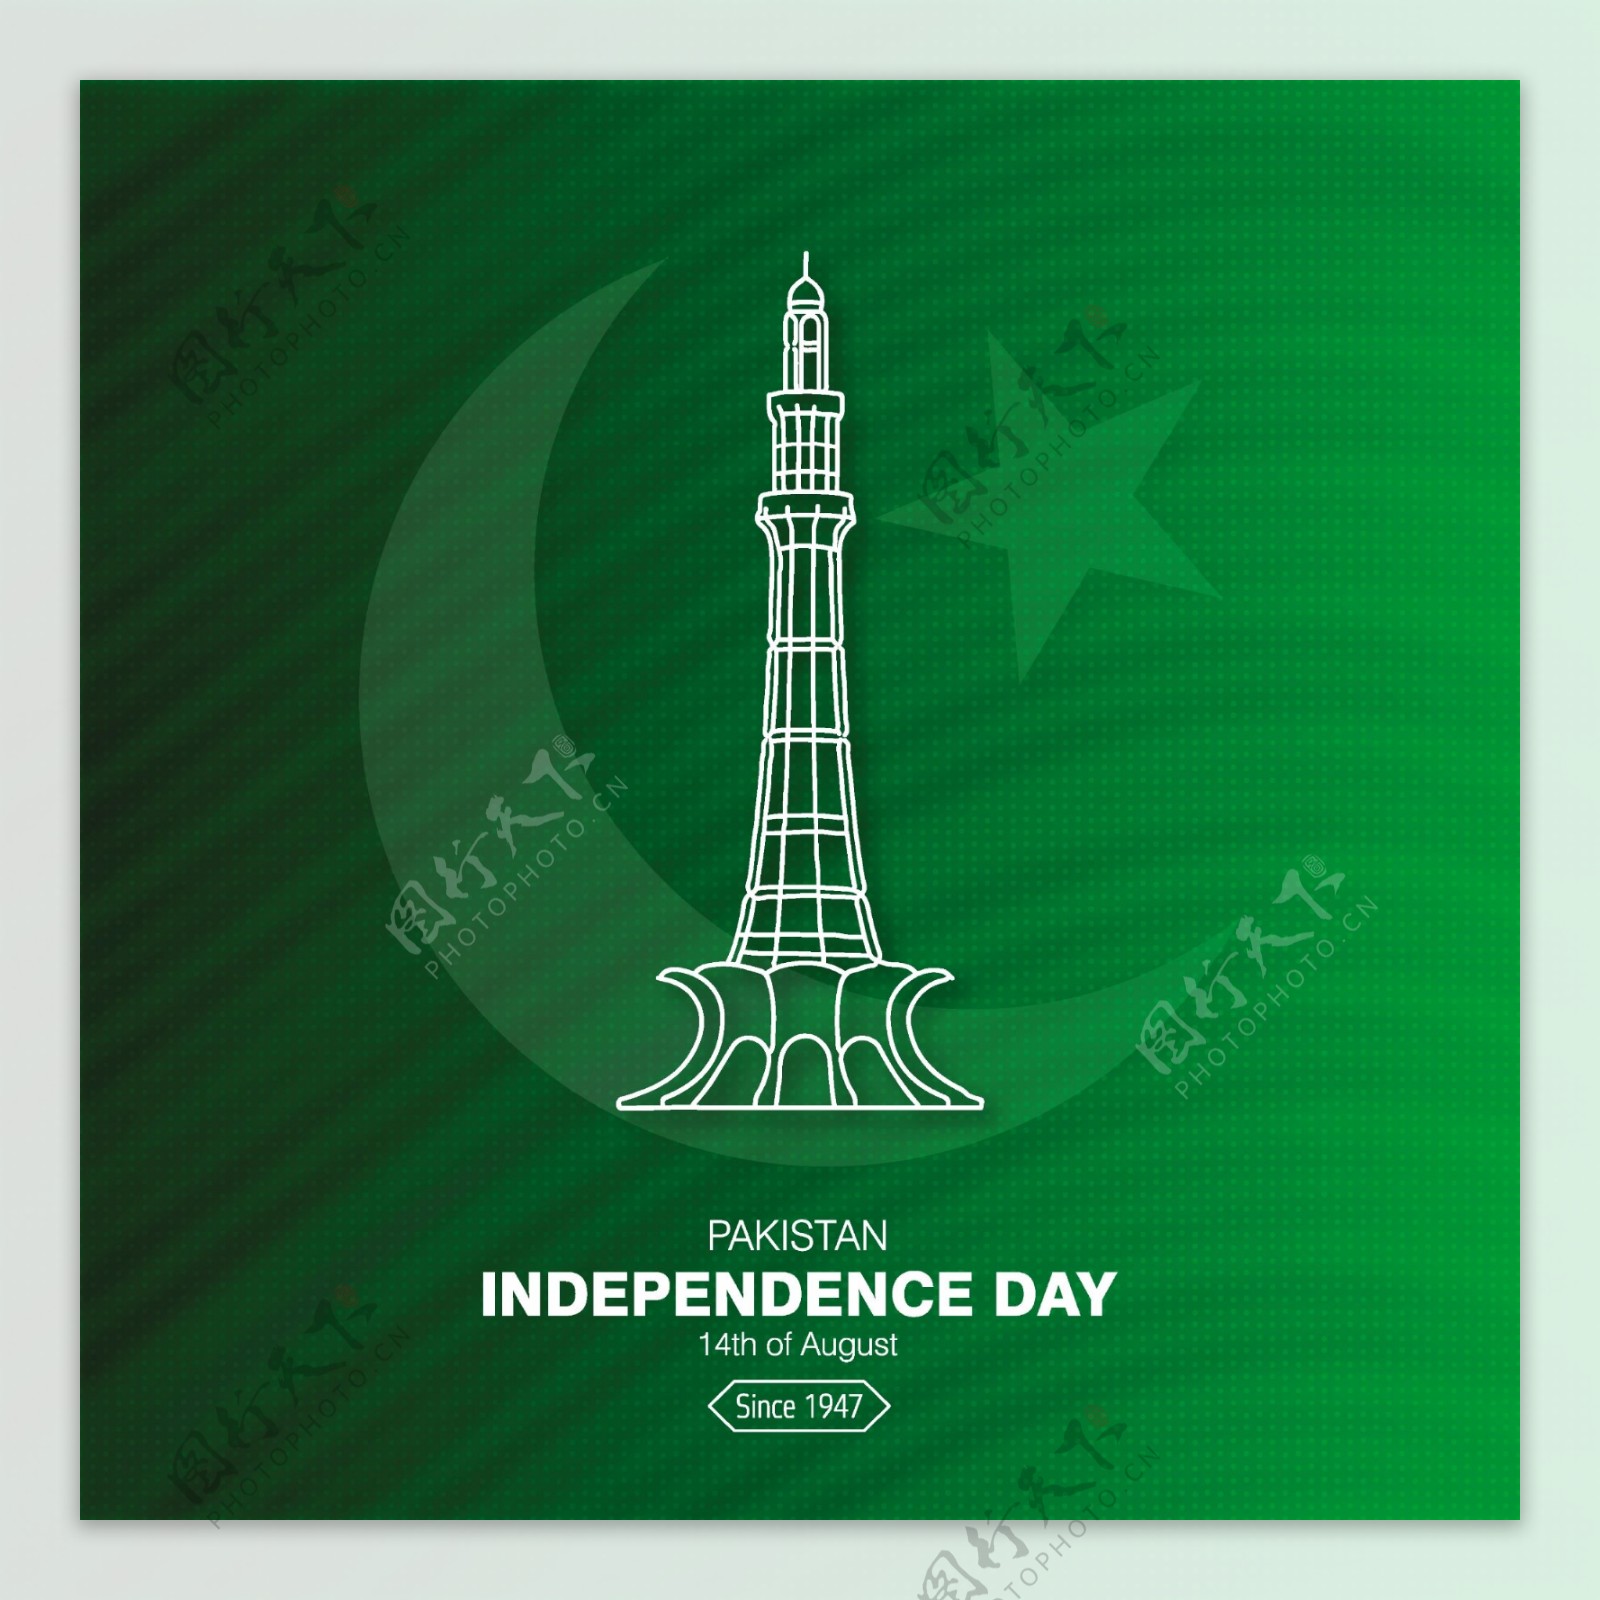 巴基斯坦独立日的设计与独立纪念塔